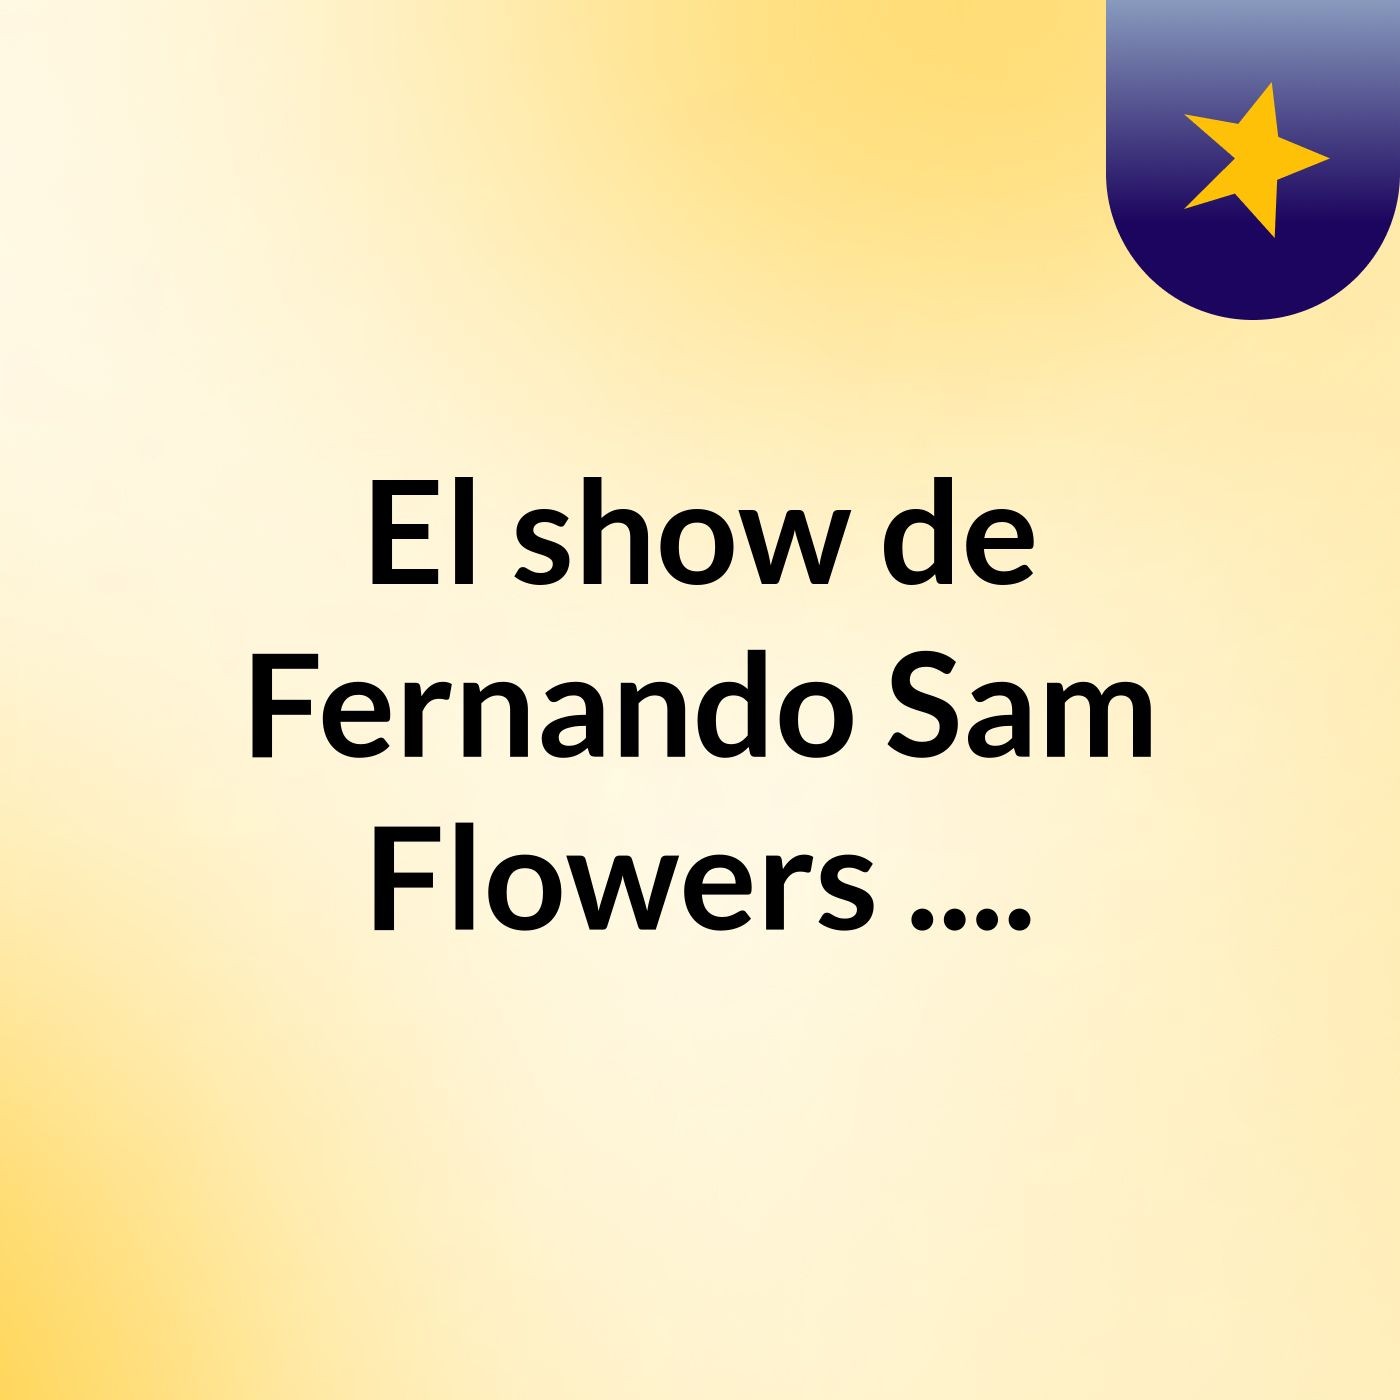 El show de Fernando Sam Flowers ....